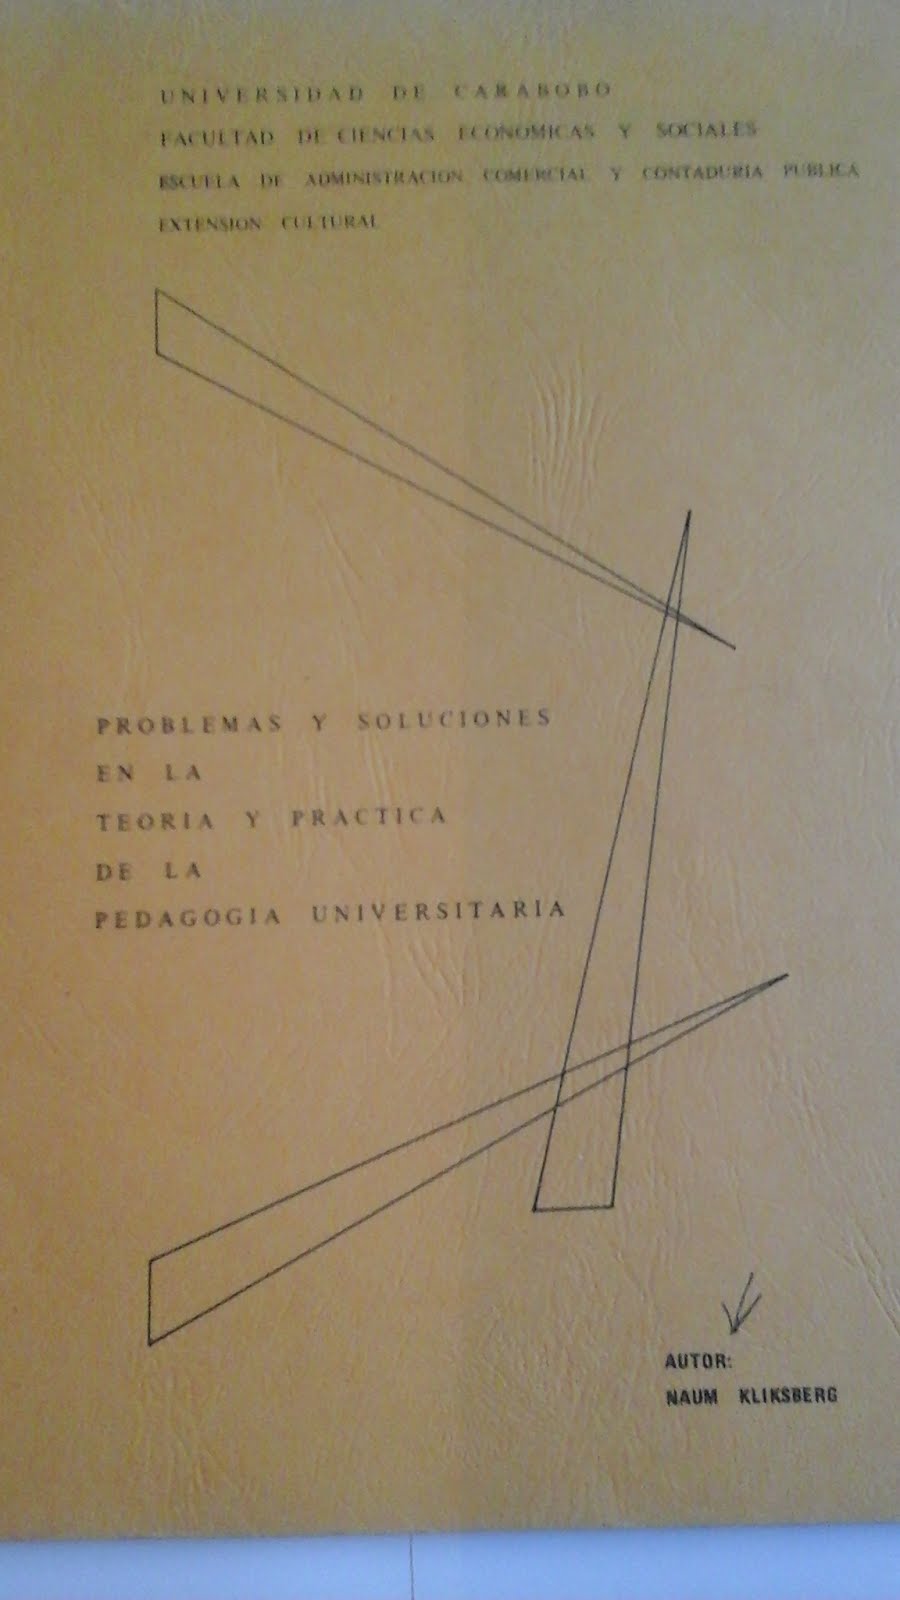 22 - Texto de Naum Kliksberg publicado por la Universidad de Carabobo, Venezuela, 2/1978.